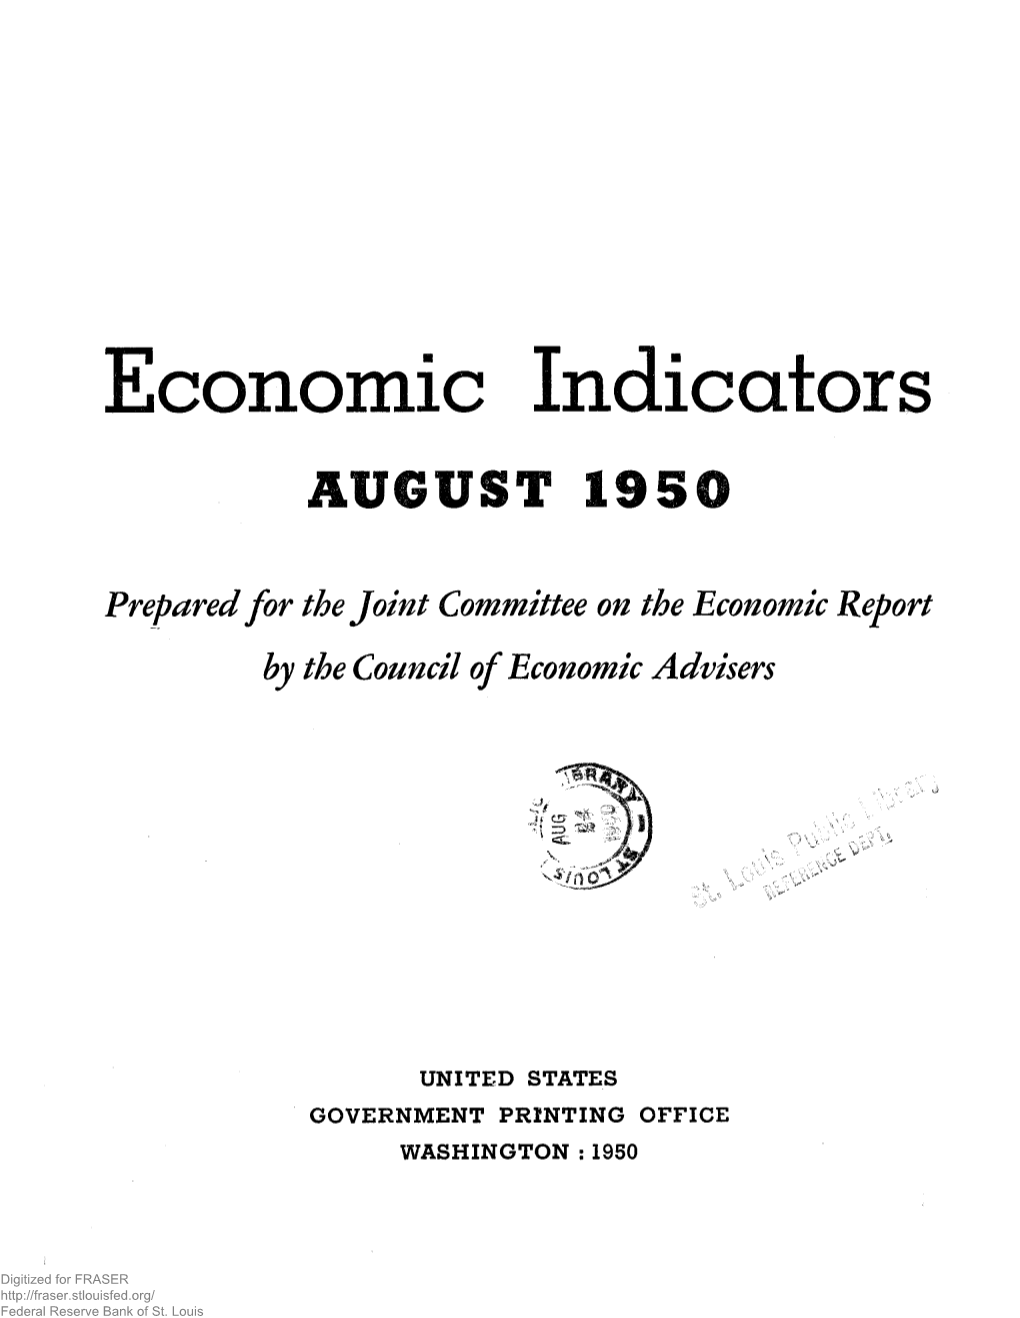 Economic Indicators: August 1950